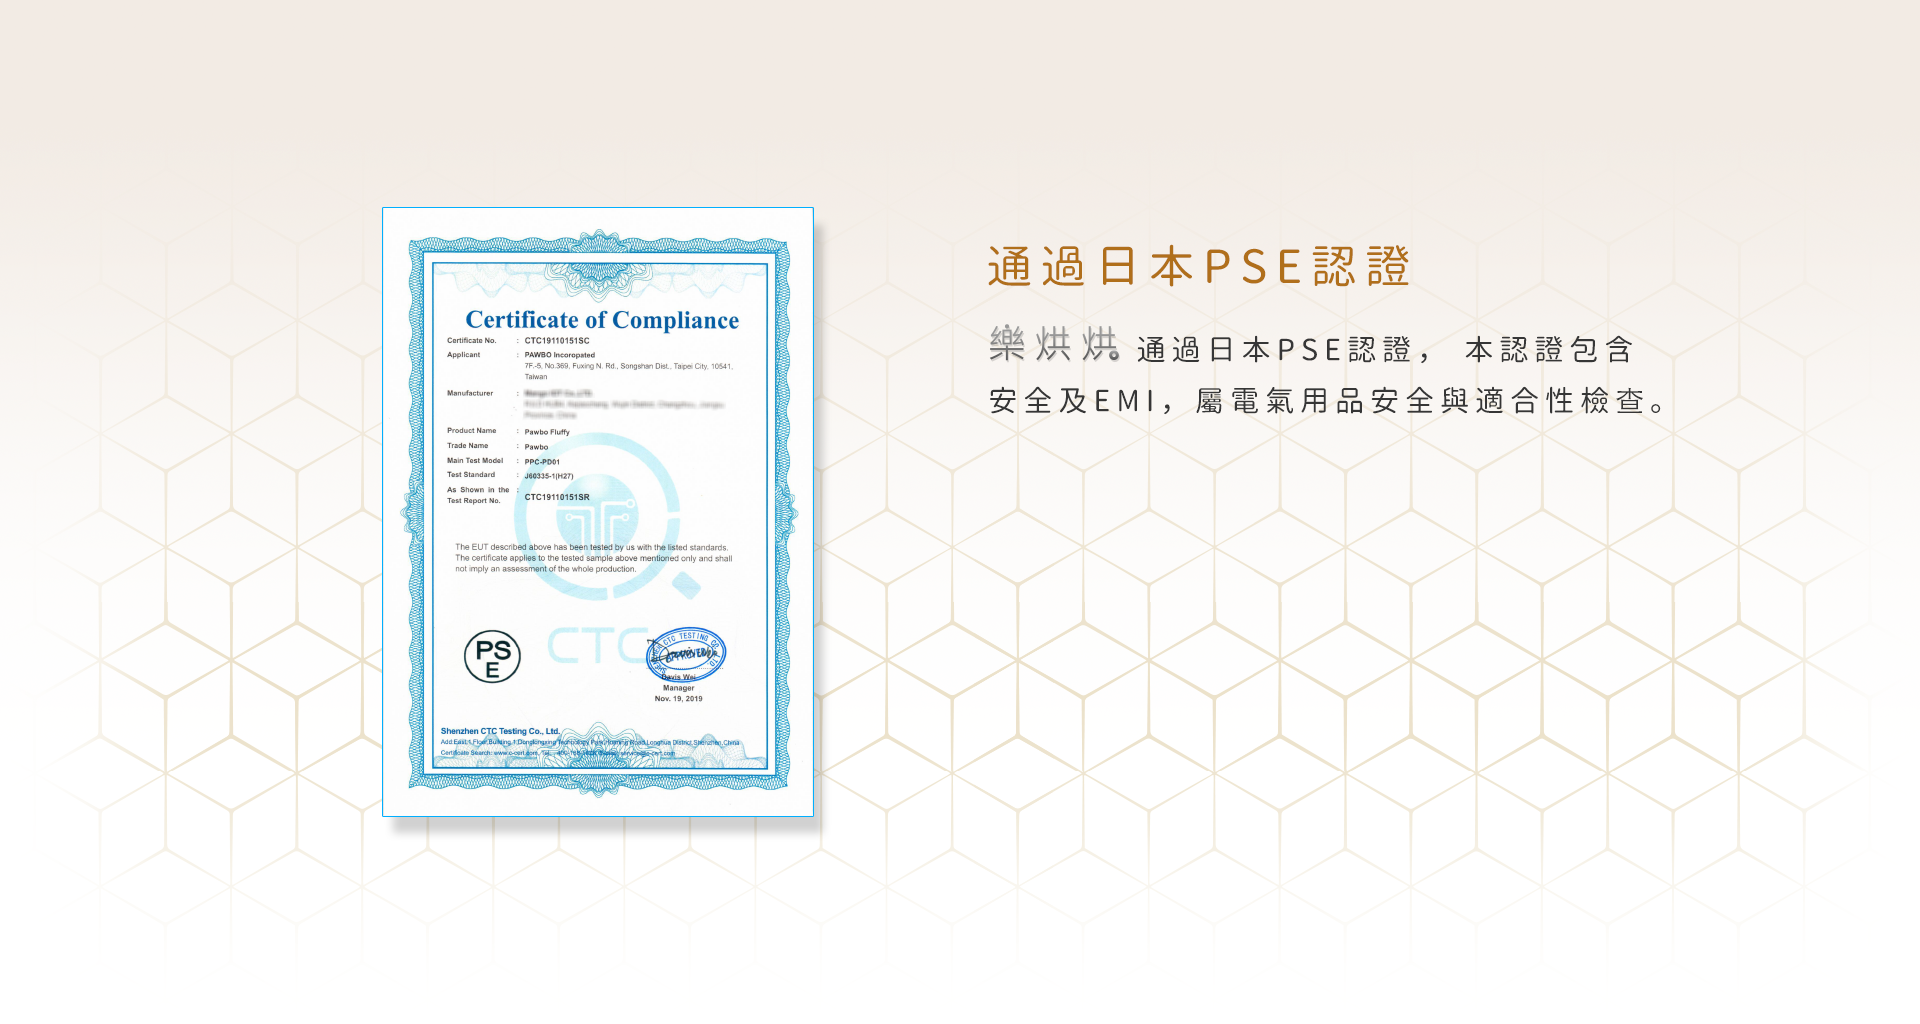 通過日本PSE認證 樂烘烘通過日本PSE認證，本認證包含安全及EMI，屬電氣用品安全與適合性檢查。